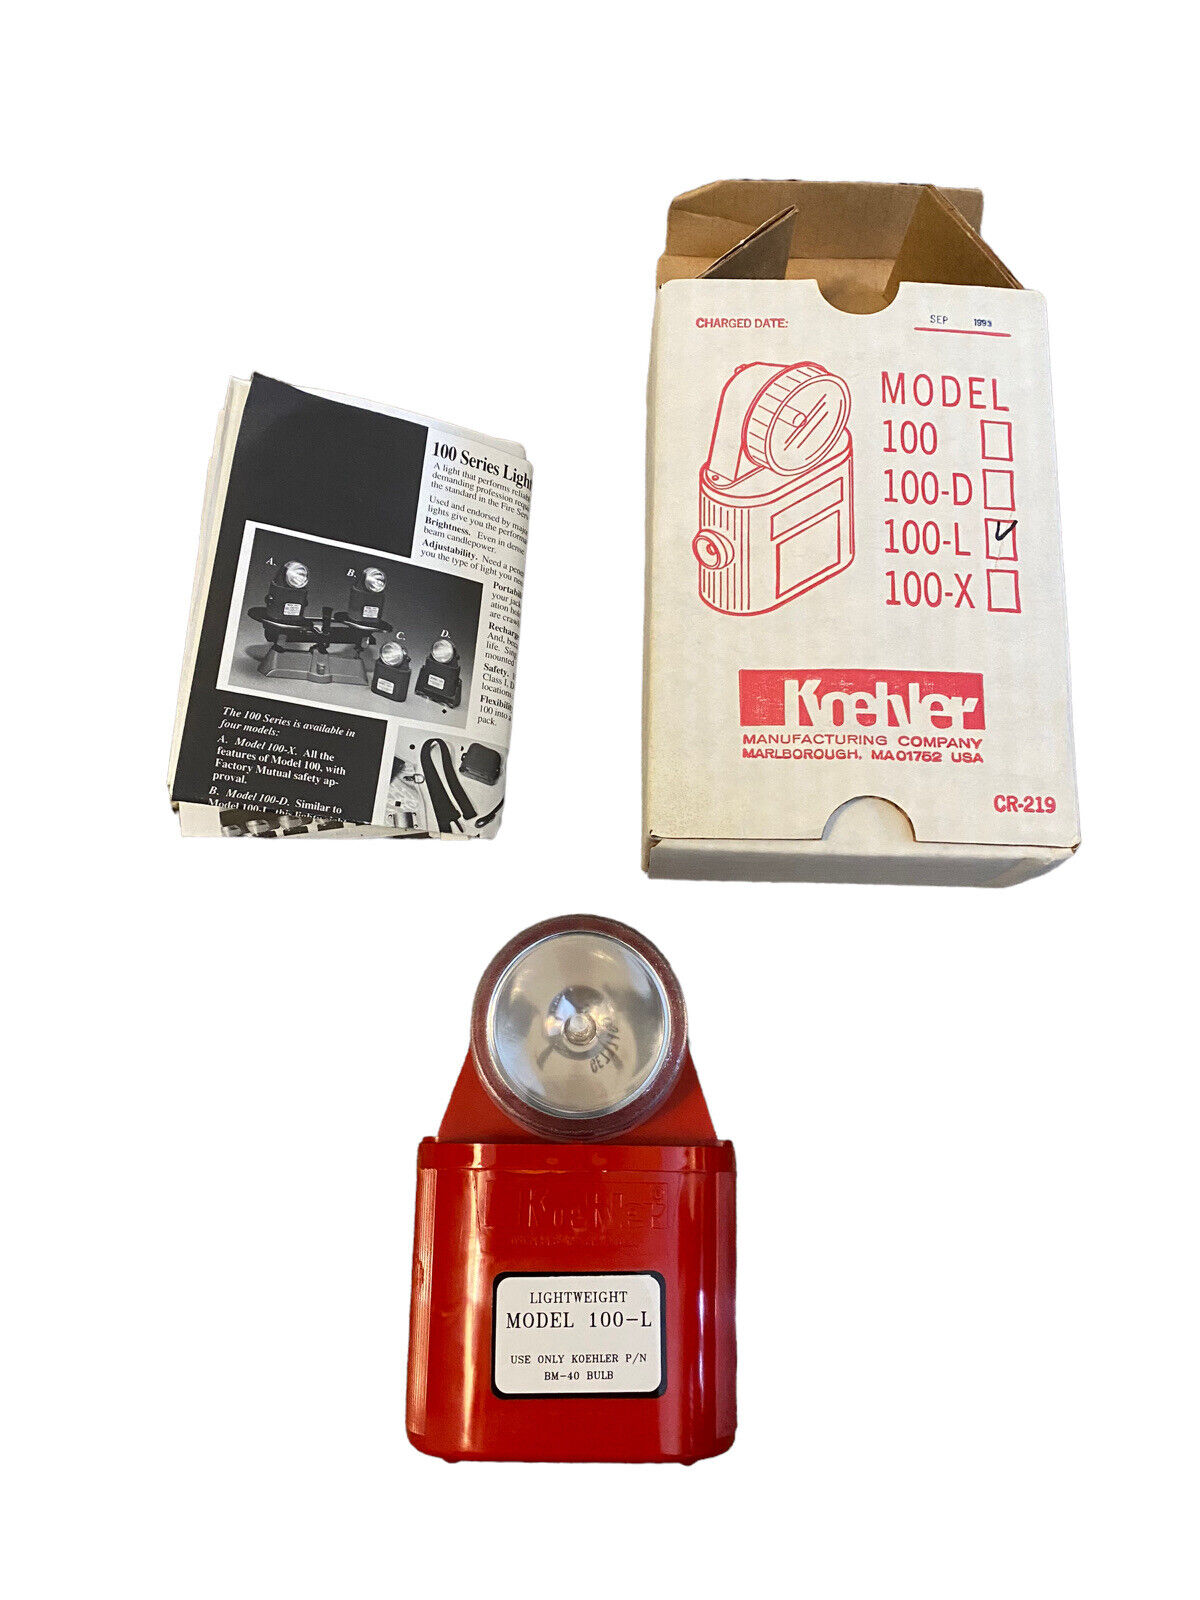 Koehler lightweight model 100-L flashlight - Vintage - For Parts - Read